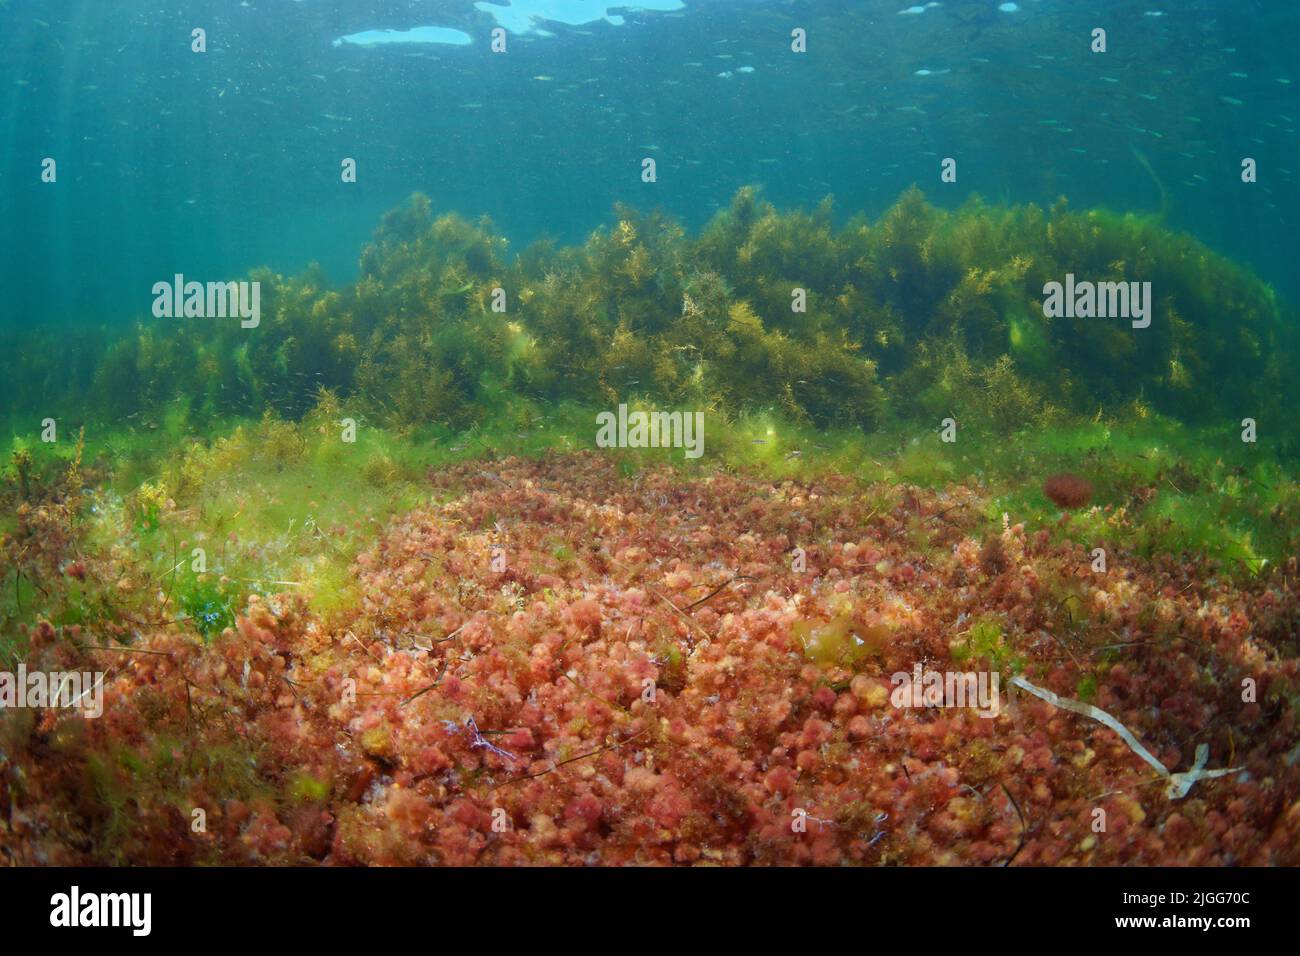 Plancher océanique recouvert de diverses algues avec algue rouge Asparagopsis armata en stade tétrasporophyte en premier plan, algues de l'Atlantique sous l'eau, Espagne Banque D'Images